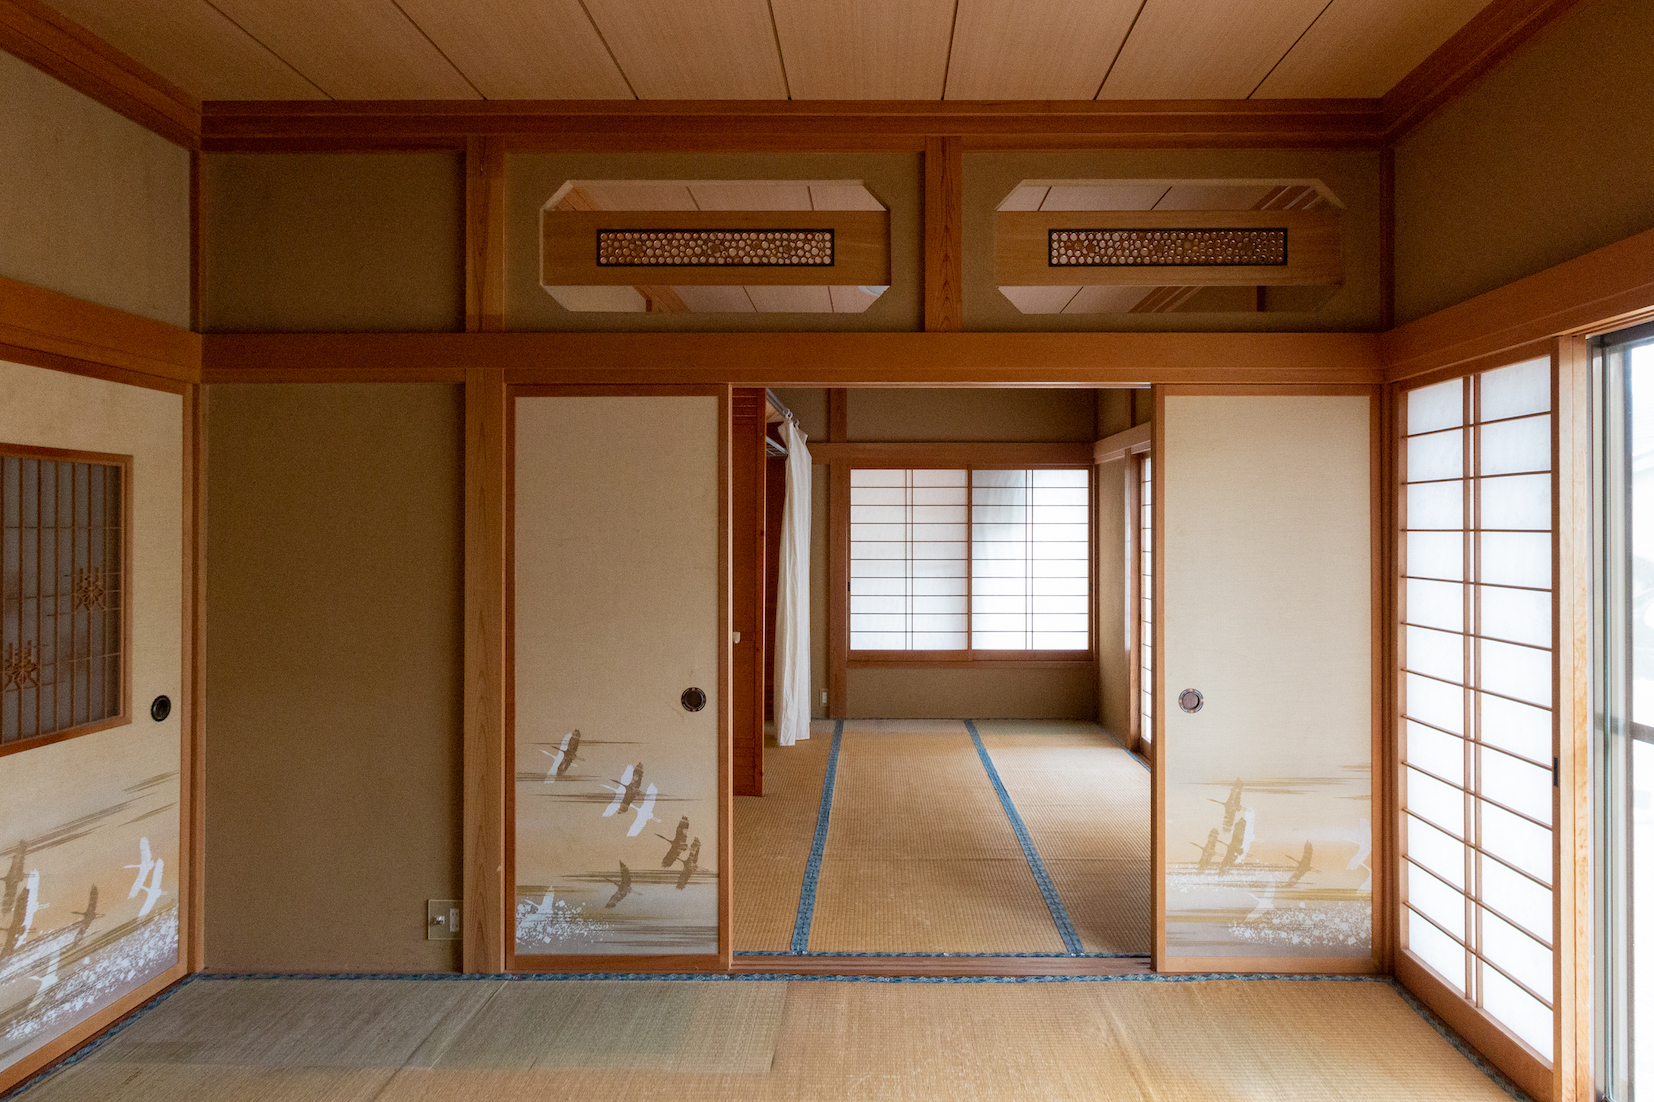 【長期現場リポート 】二間の和室をLDKに – 1階全面改装 / 銚子市T様邸 | 現場リポート